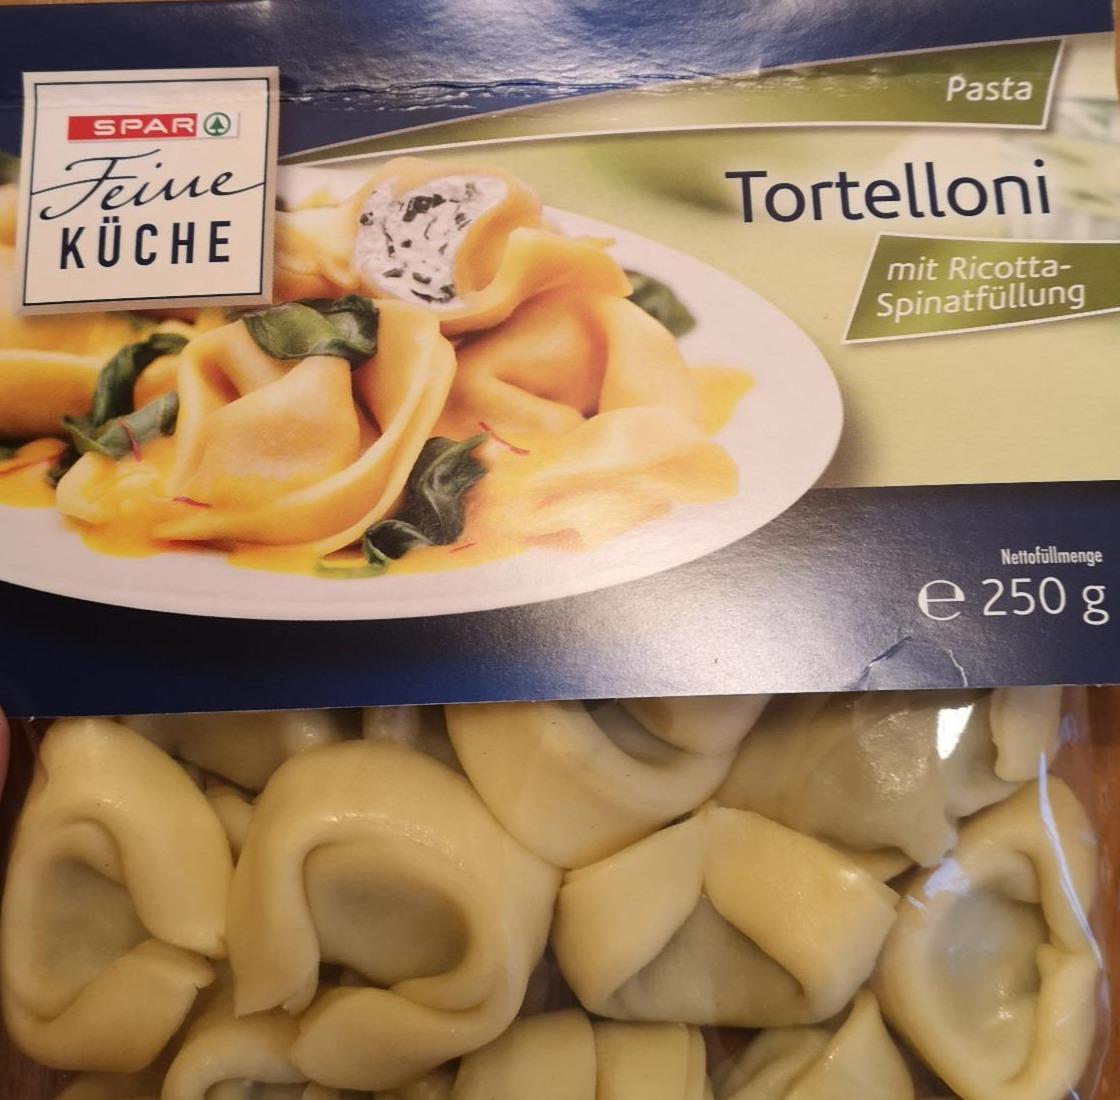 Фото - Tortelloni Spar feine küche